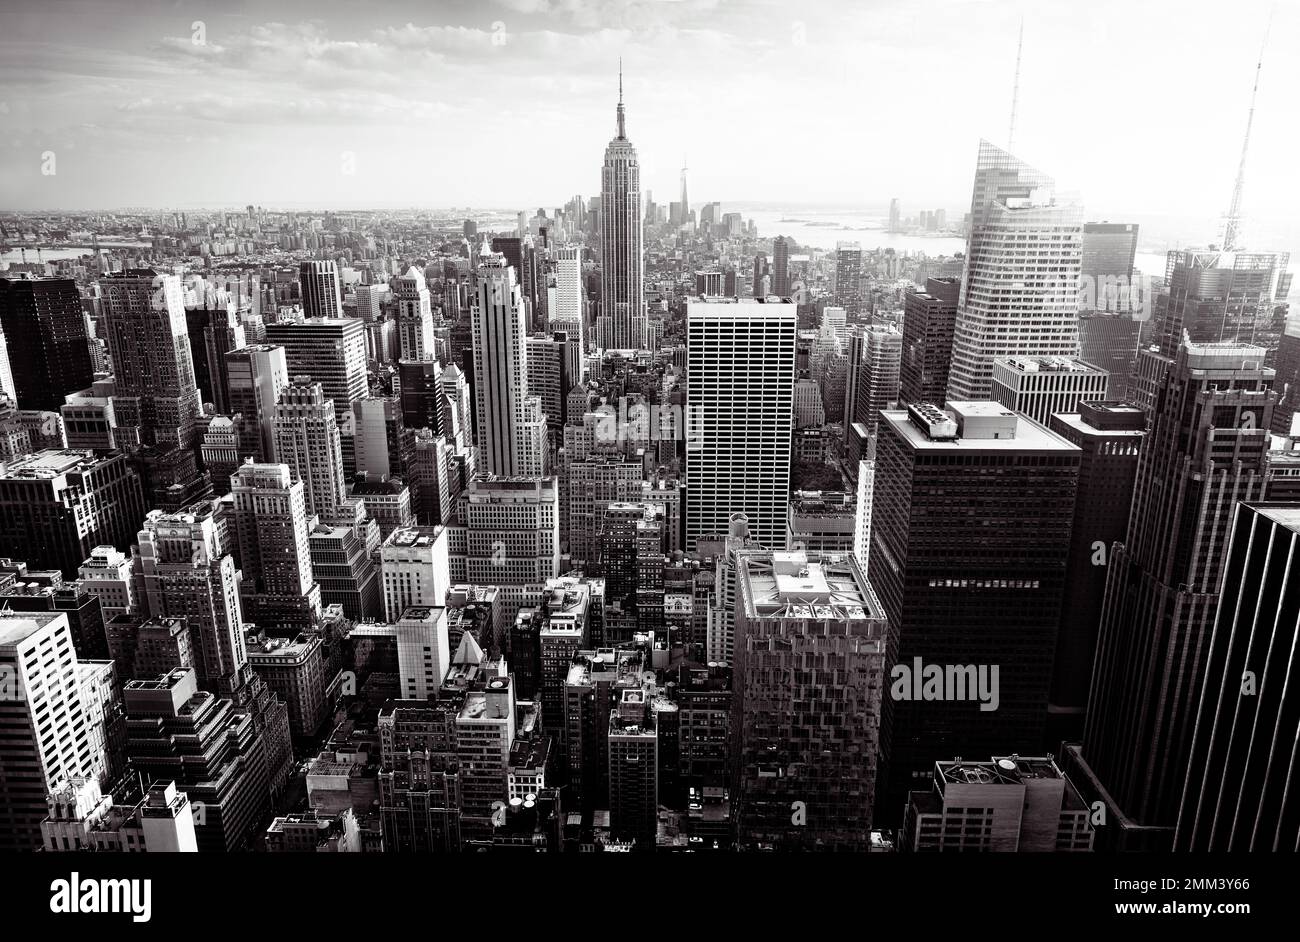 New York City skyline urbaine avec des gratte-ciel au coucher du soleil, aux États-Unis. Banque D'Images